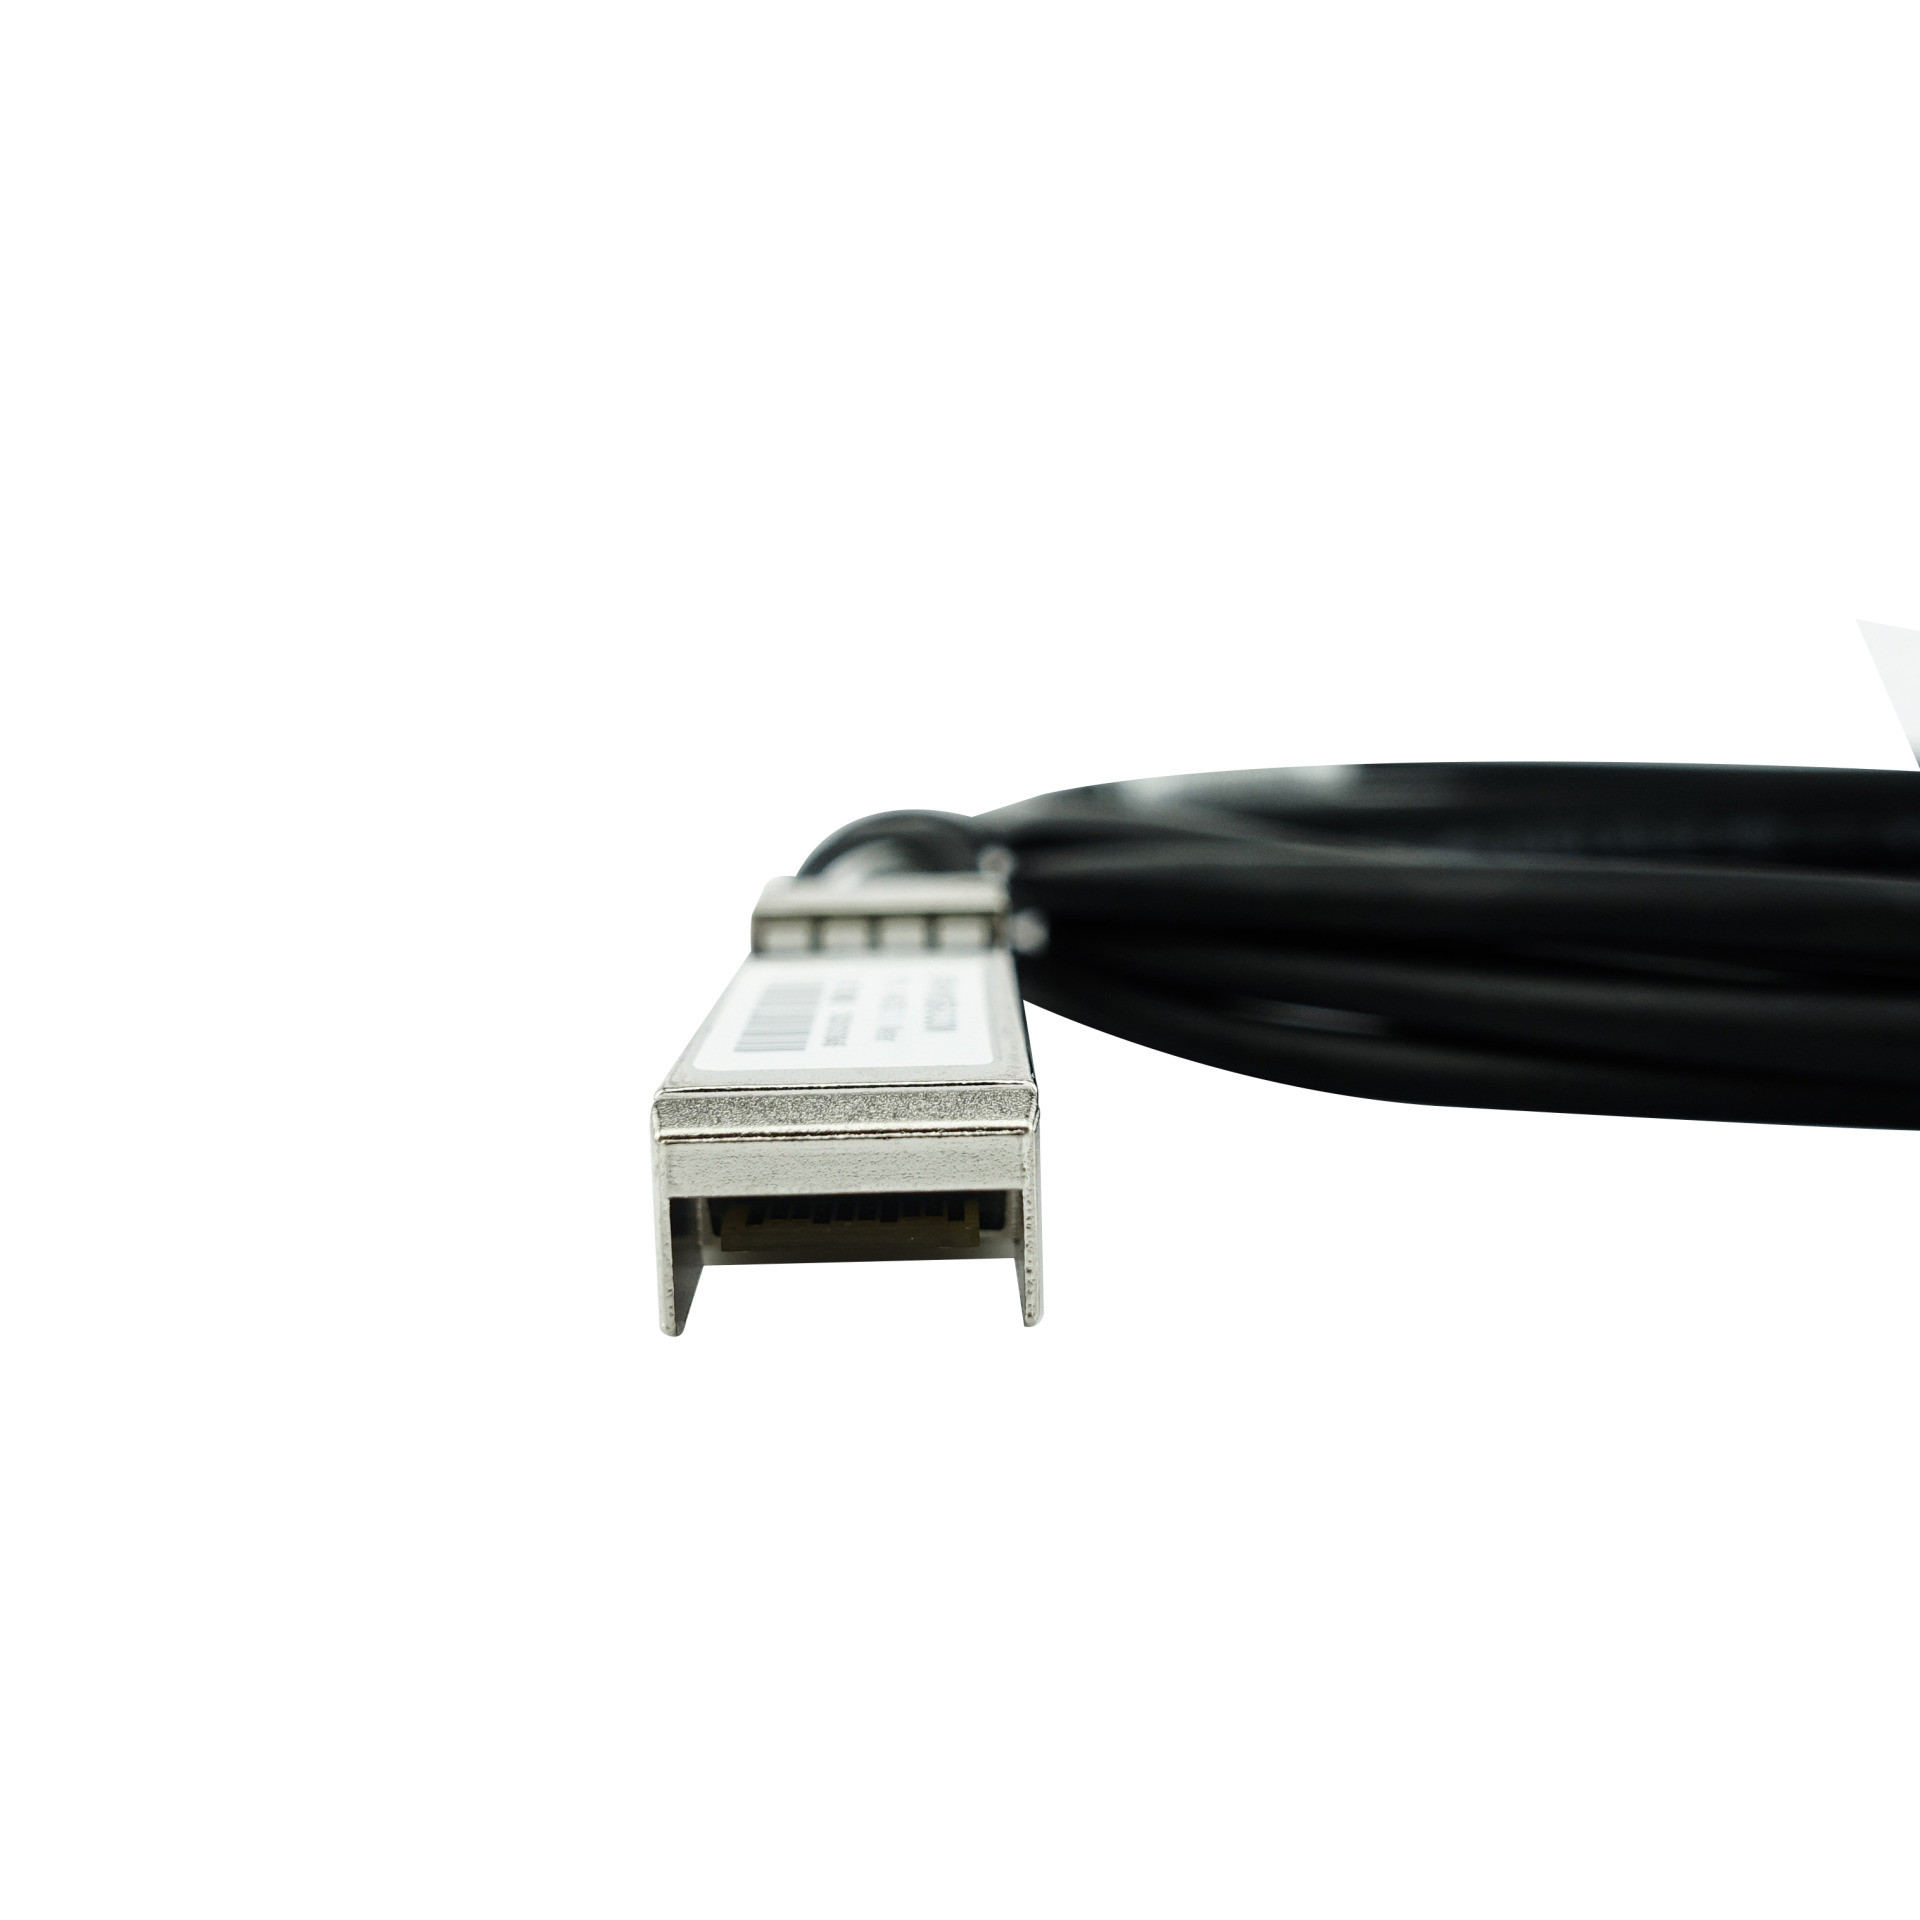 BlueLAN passives DAC Kabel, SFP+ auf SFP+, 10GBASE-CR, 1m, AWG30